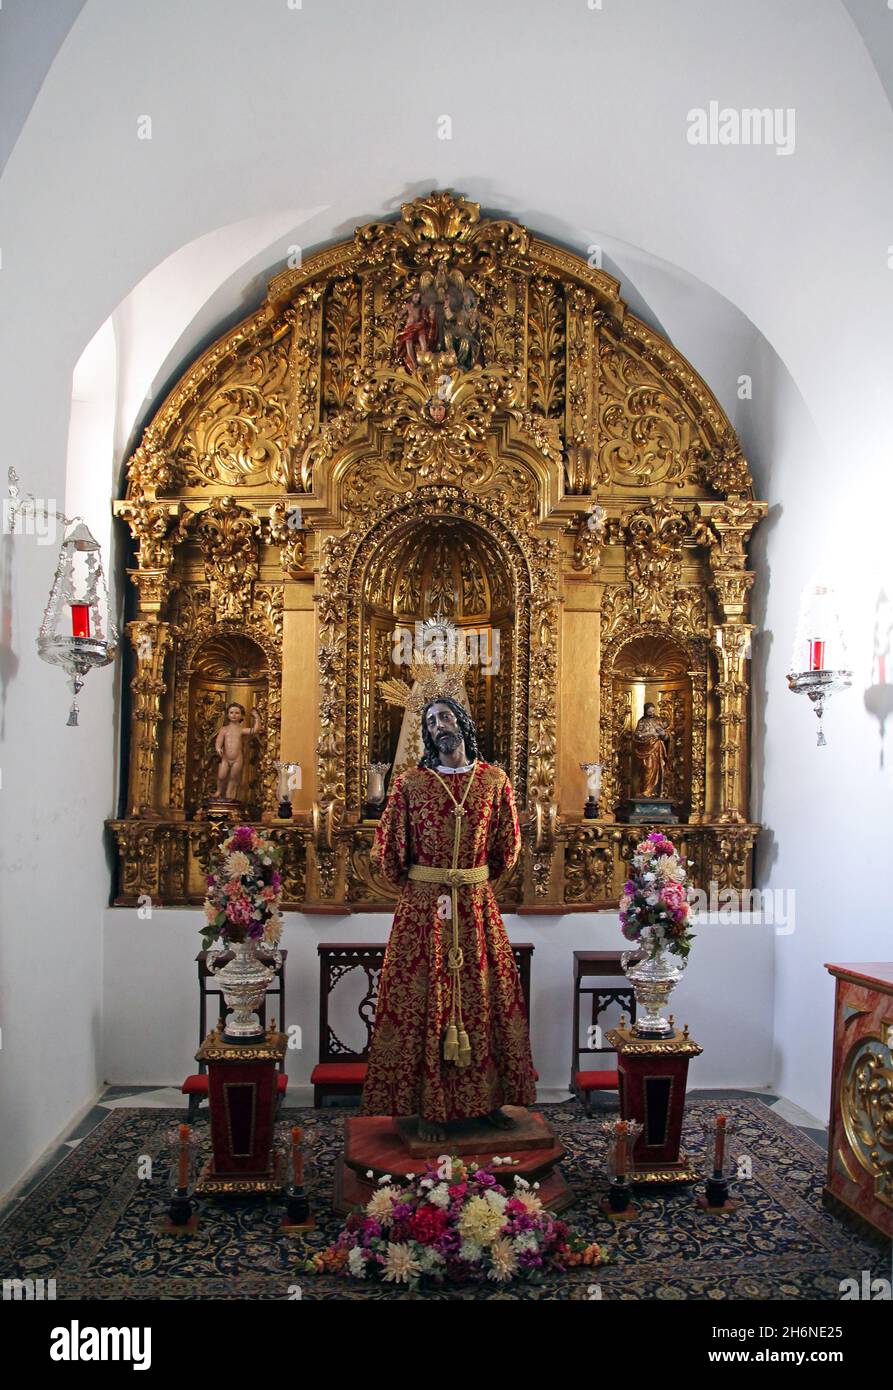 Die Pfarrkirche von San Juan y Todos los Santos (St. Johannes und alle Heiligen).Prototyp einer barocken Kirche.das Altarbild ist das Werk von Juan Fernández del Río, das dem Architekten Francisco Hurtado Izquierdo zugeschrieben wird. Stockfoto